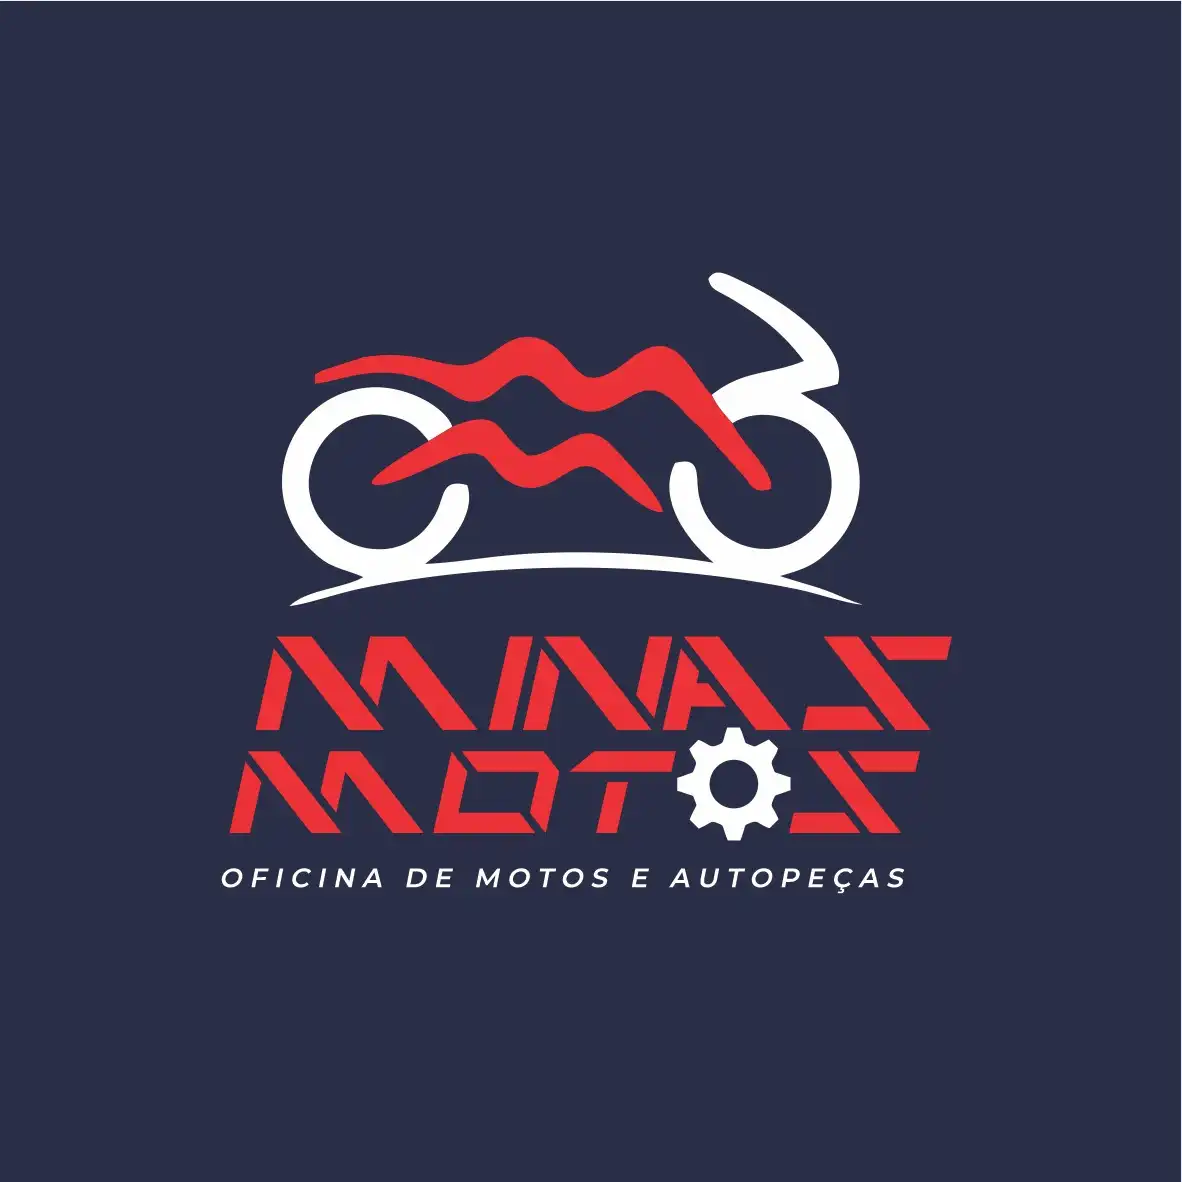 
Logotipo Logomarca Oficina de Motos e Autopeças



